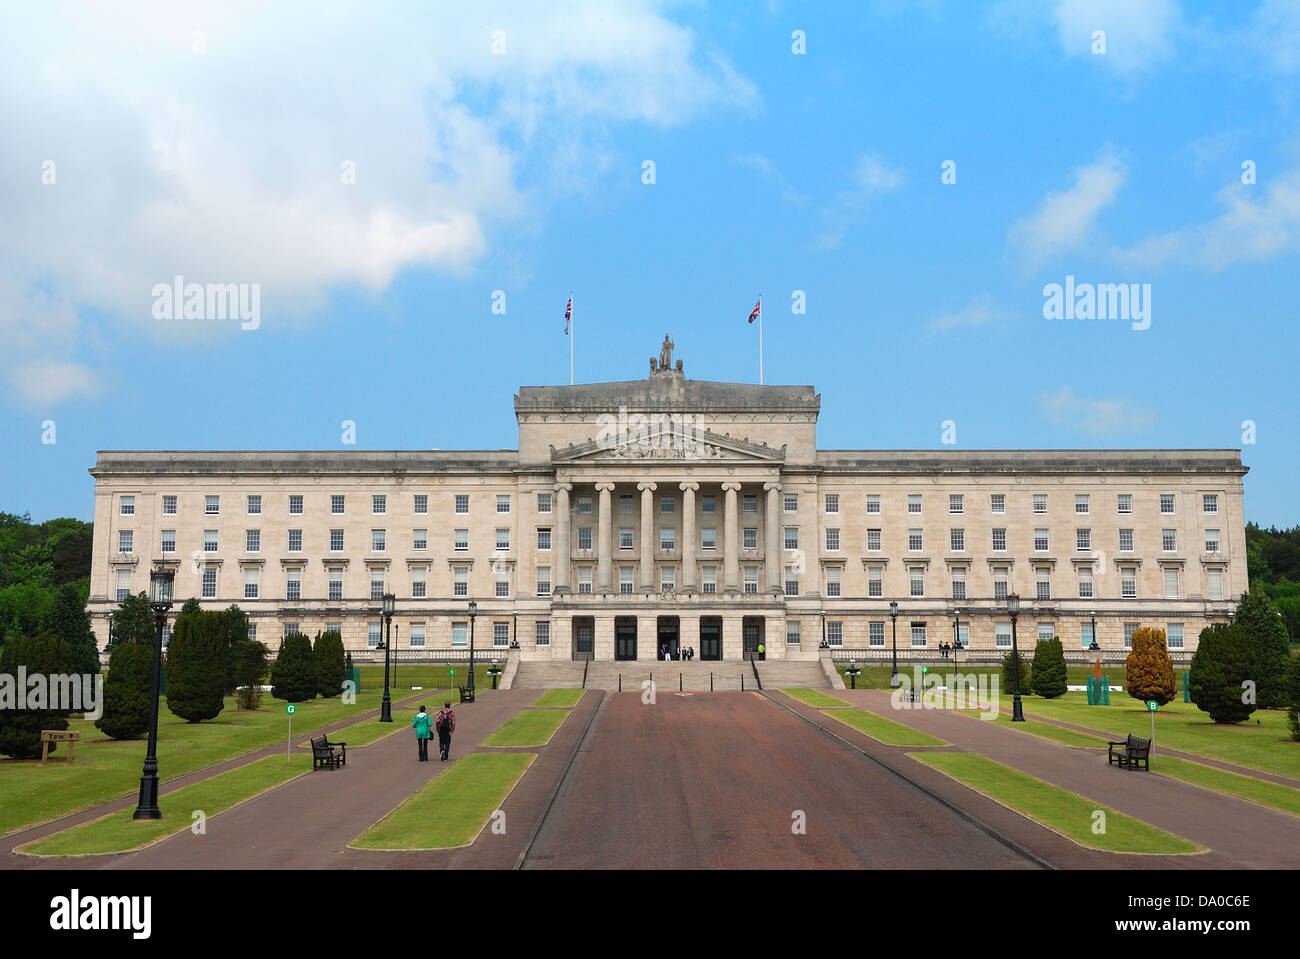 Le Parlement de l'Irlande du Nord - Stormont Banque D'Images